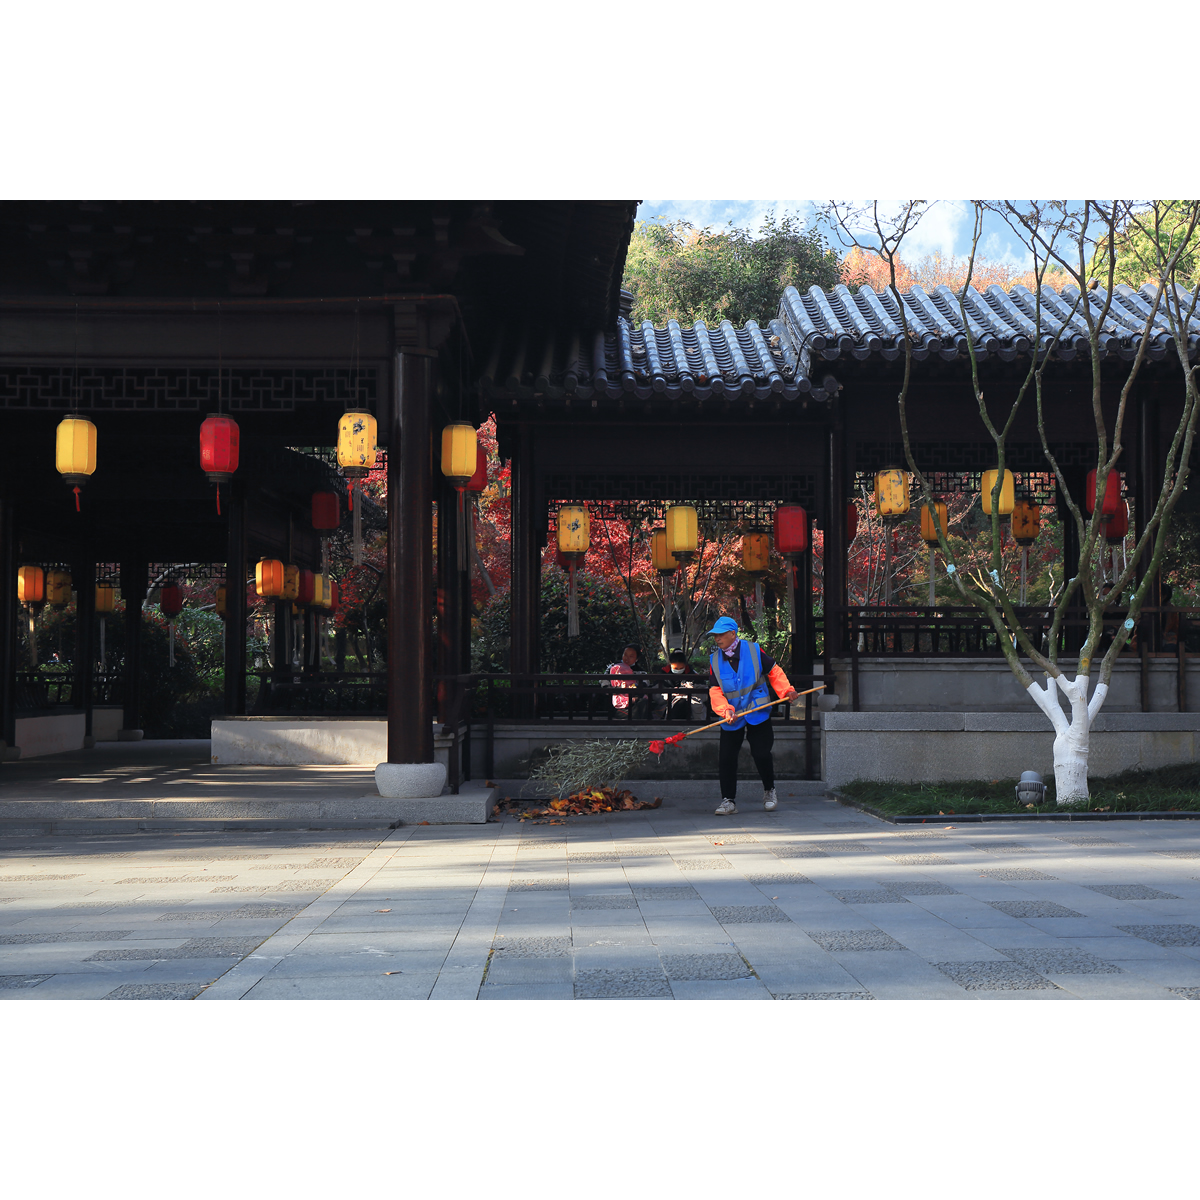 原创纪实摄影-公园的美丽风景(1张) 南京市清洁工实拍素材